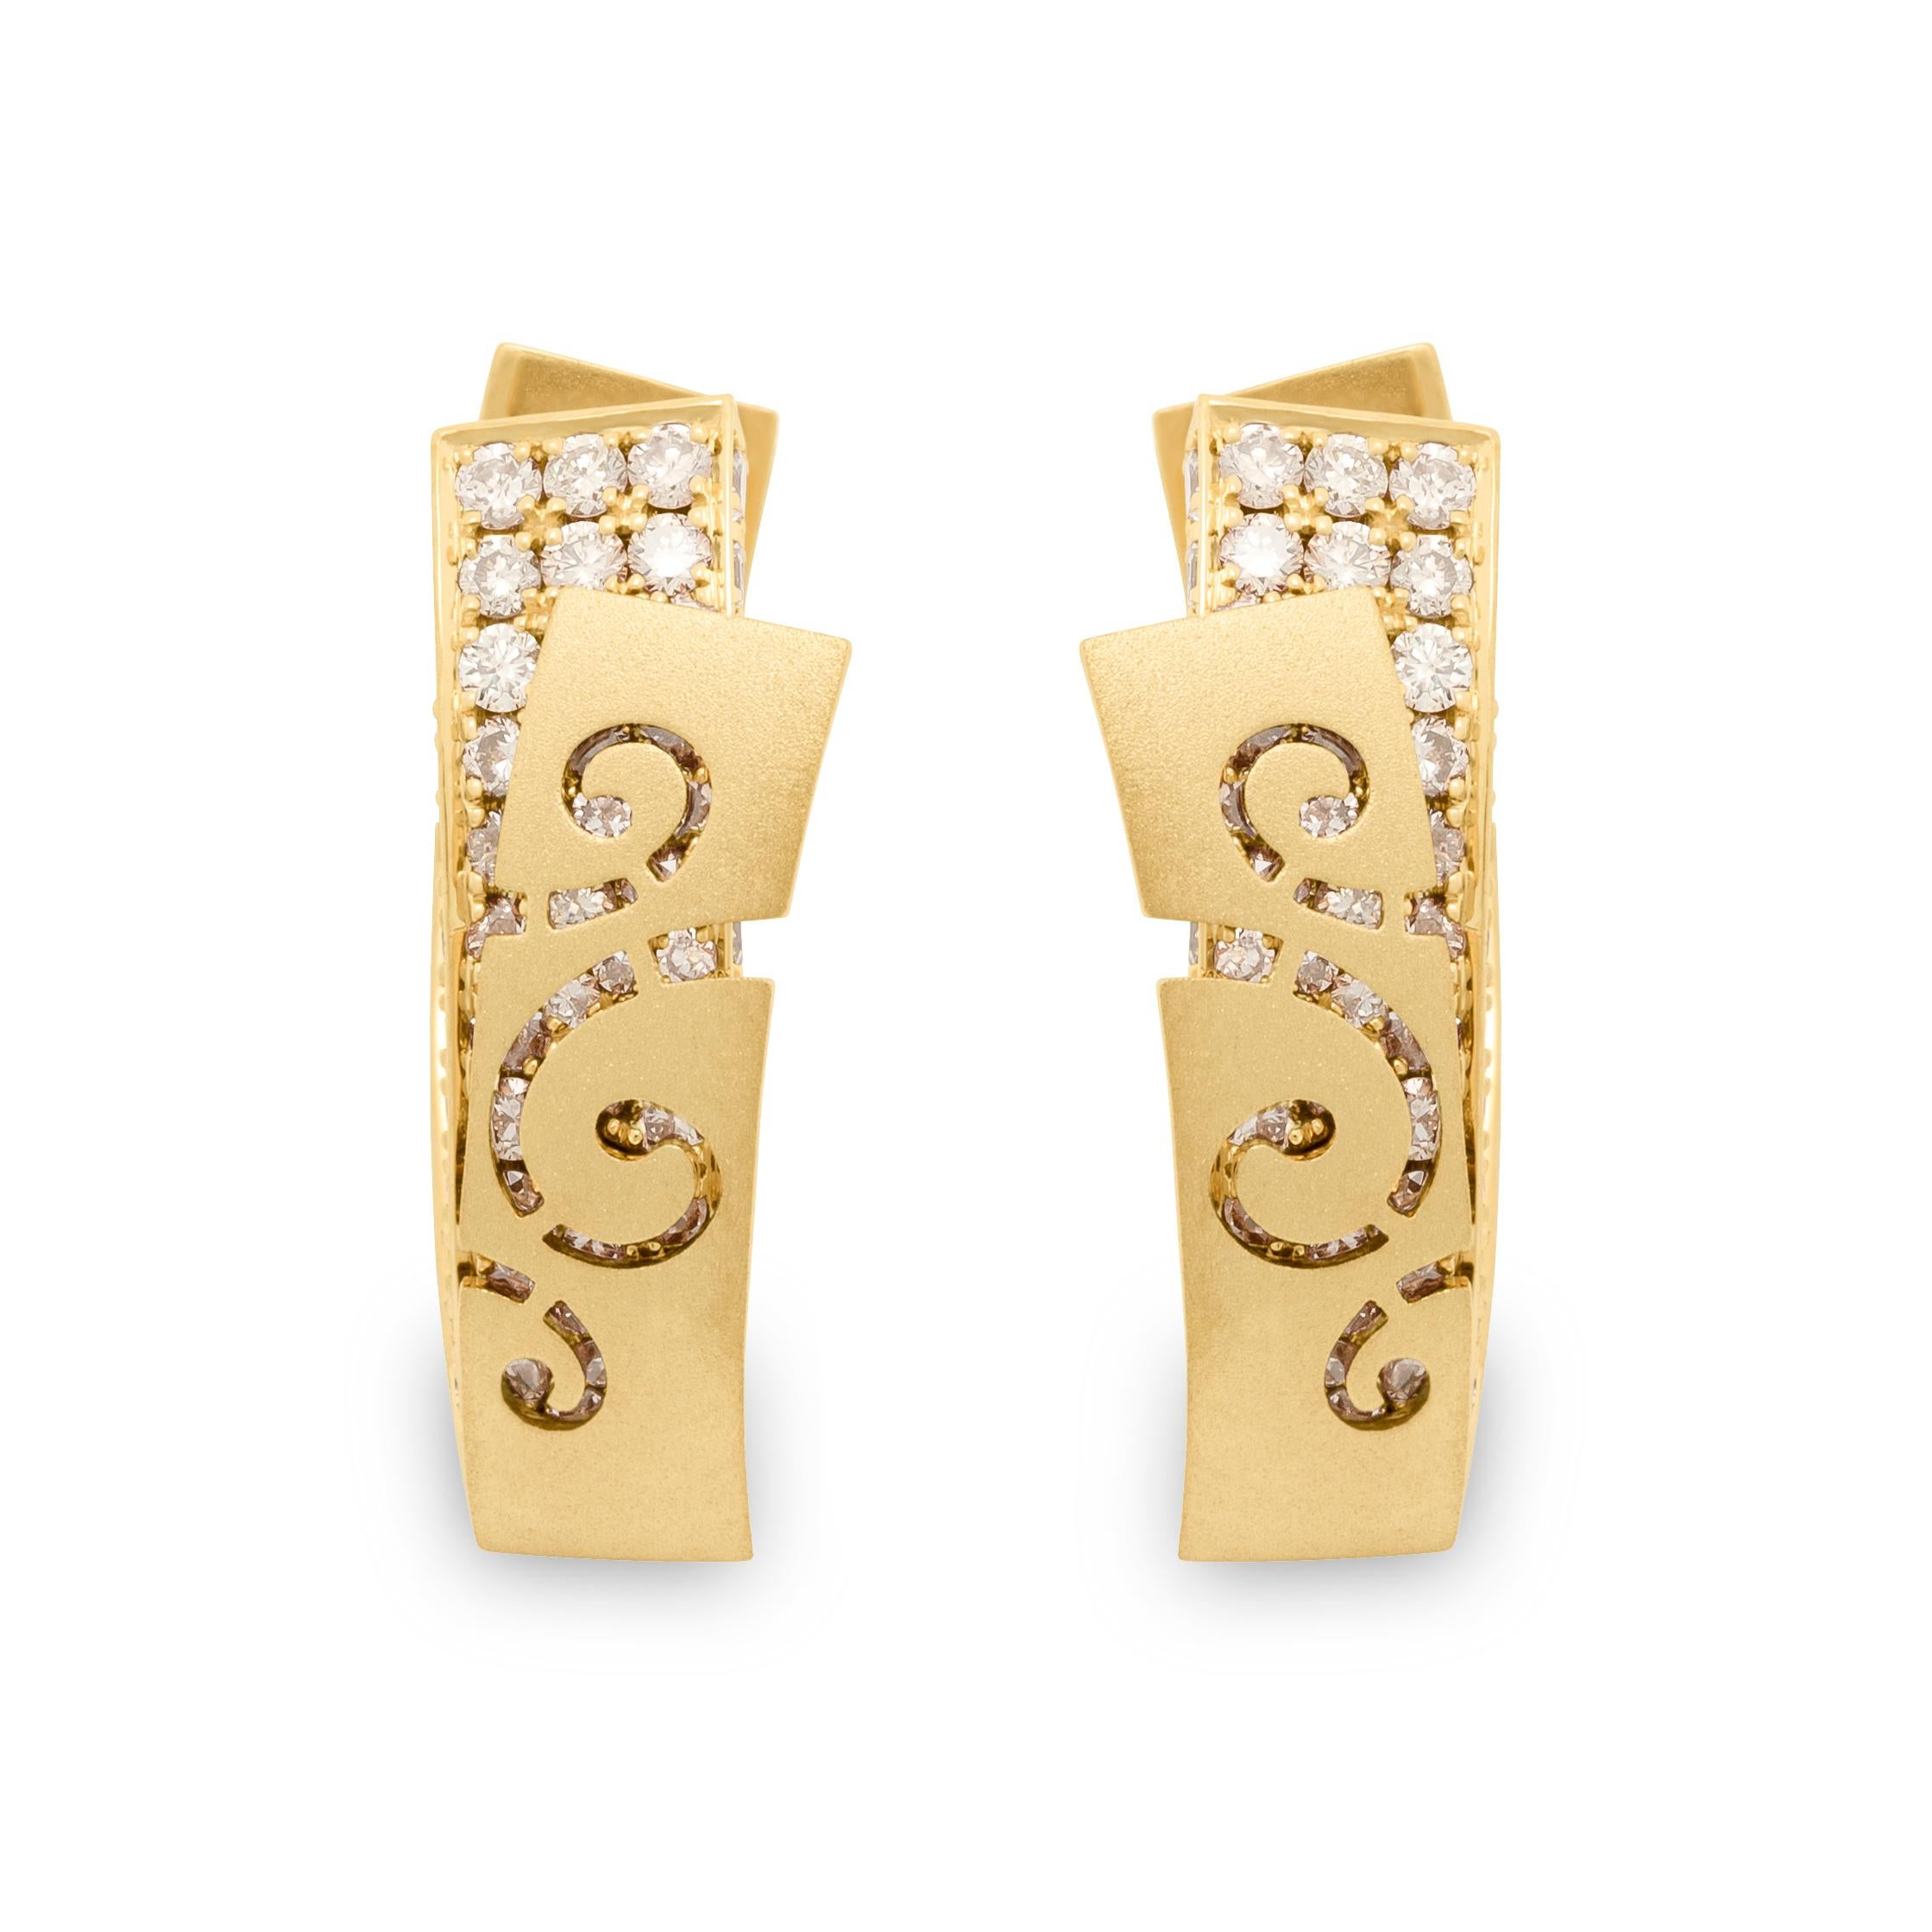 Champagner-Diamanten 18 Karat Gelbgold Kleine Schleier-Ohrringe
Veil hat unsere Designer zu dieser Schmuckserie inspiriert. Diese Ohrringe zum Beispiel scheinen zwei Schichten zu haben. Die erste Schicht ist ein 